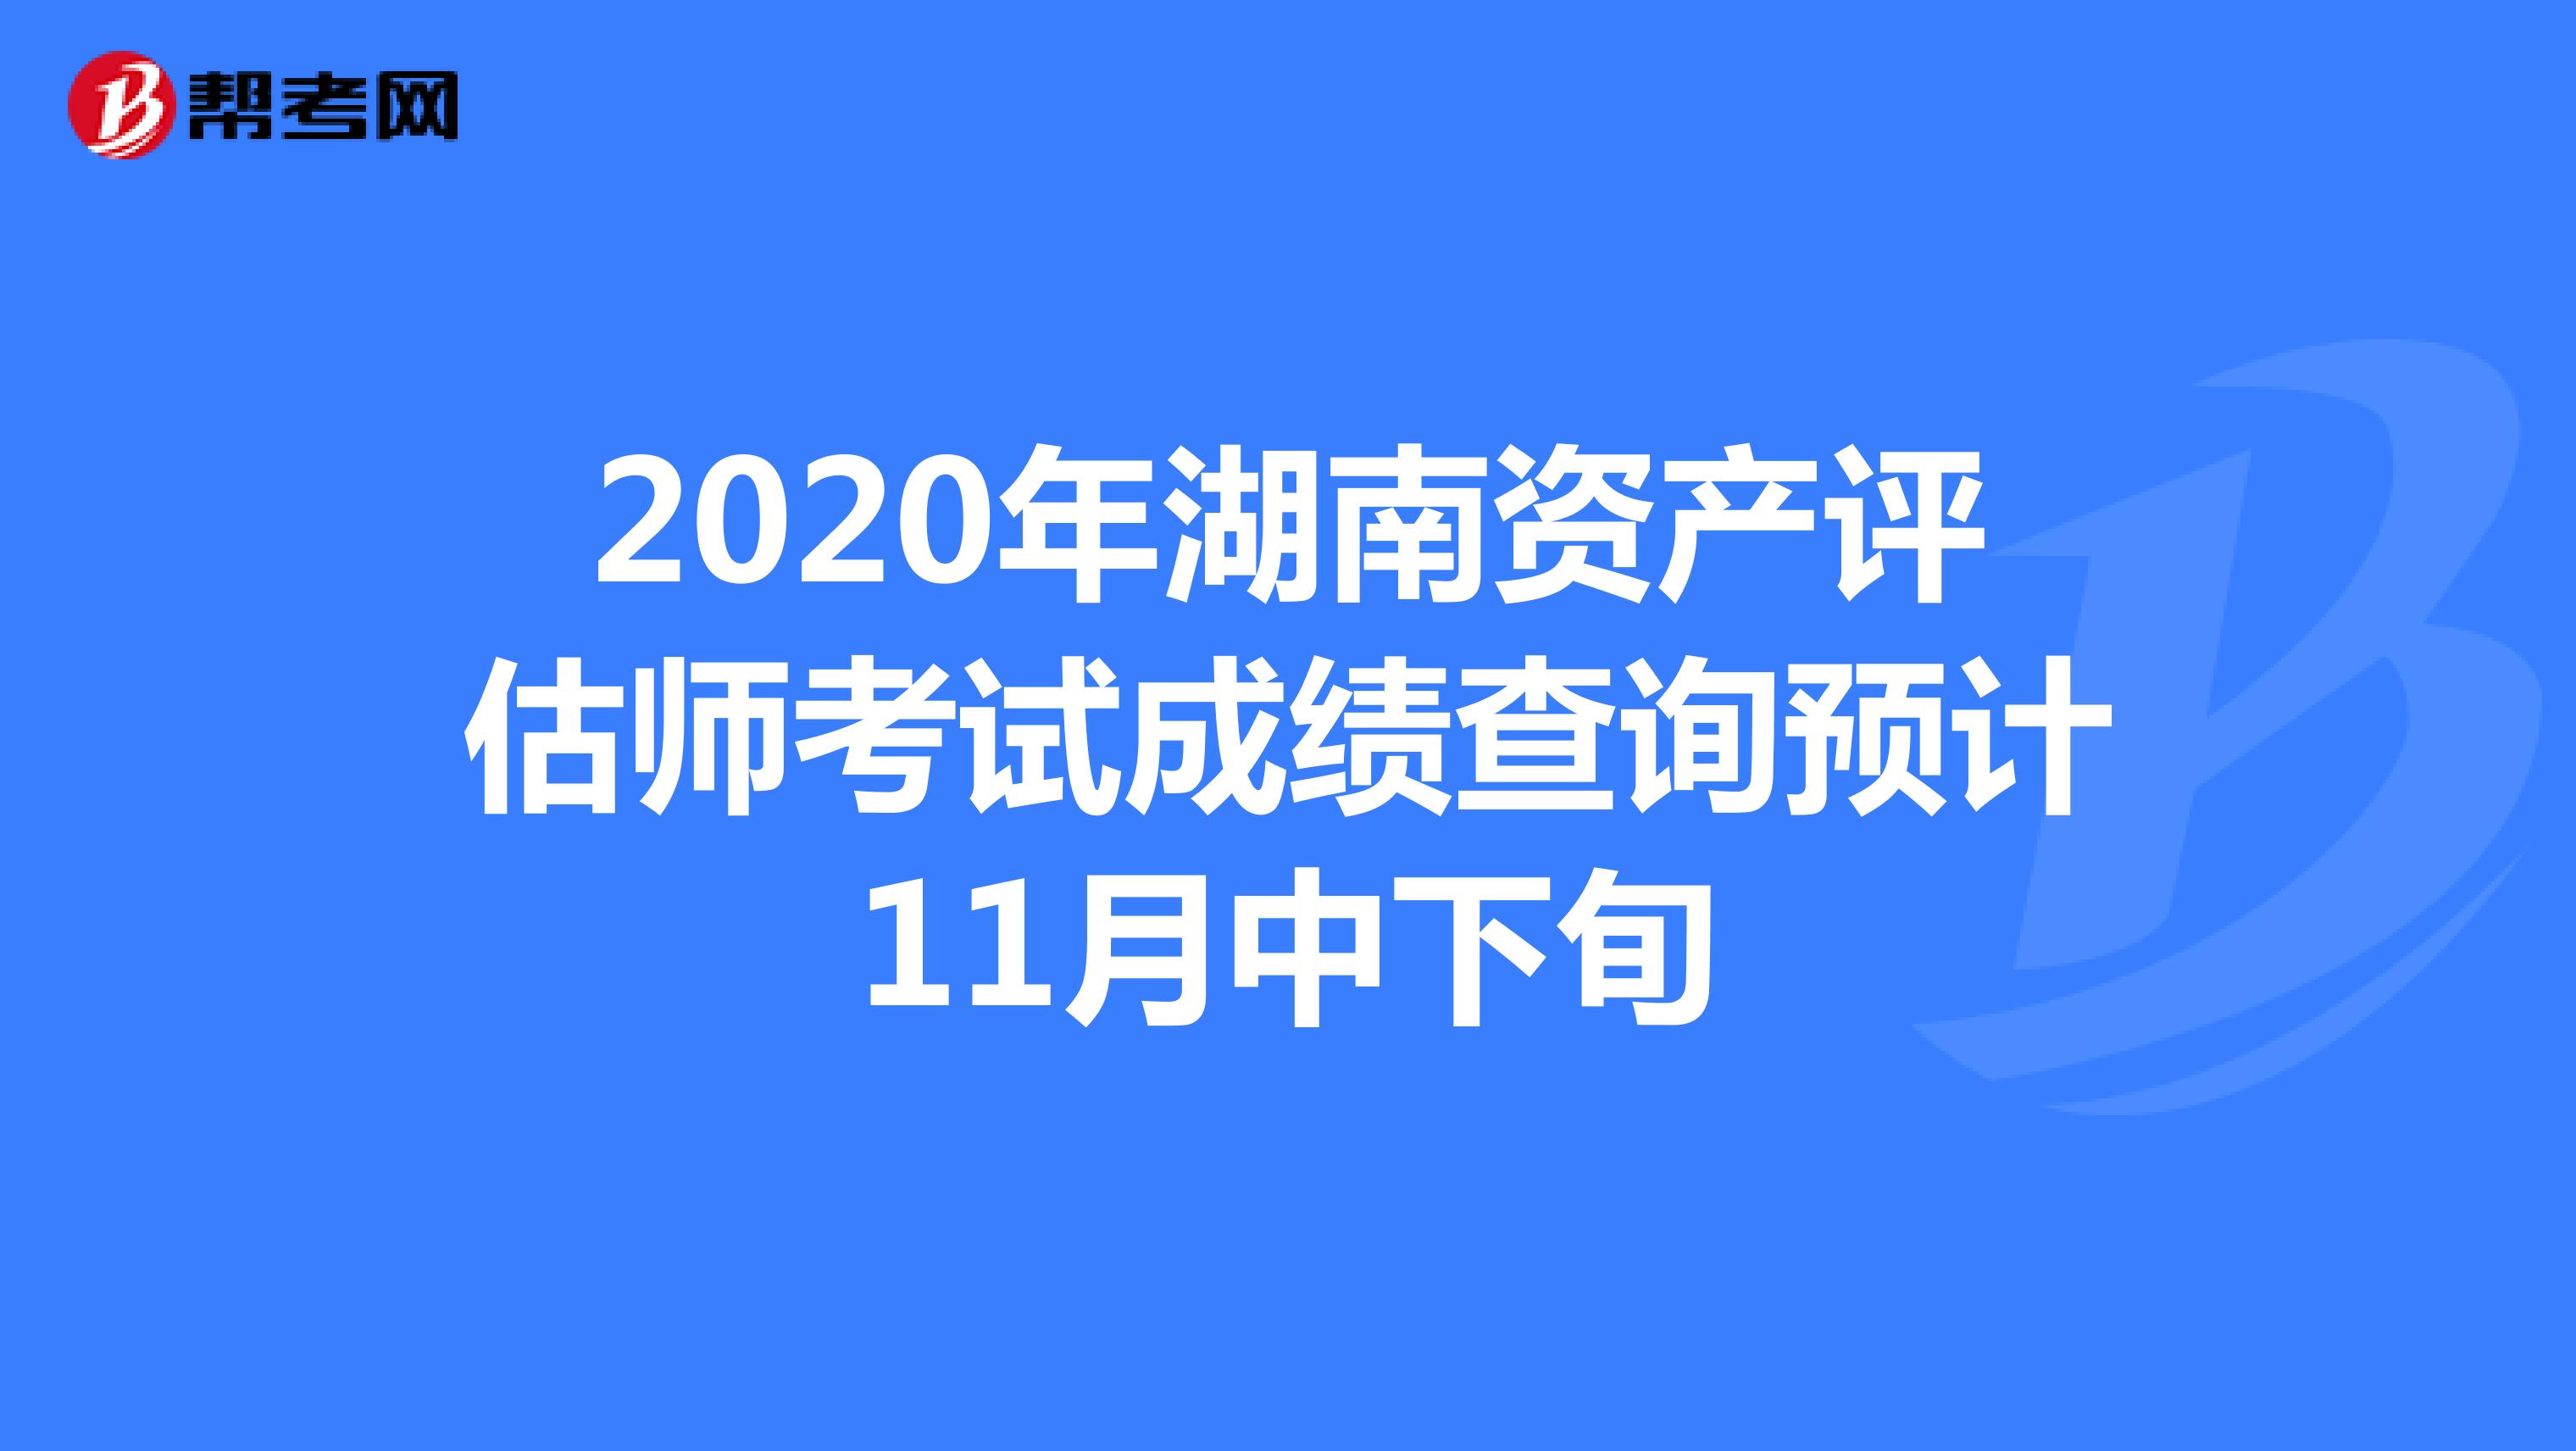 2020年湖南资产评估师考试成绩查询预计11月中下旬